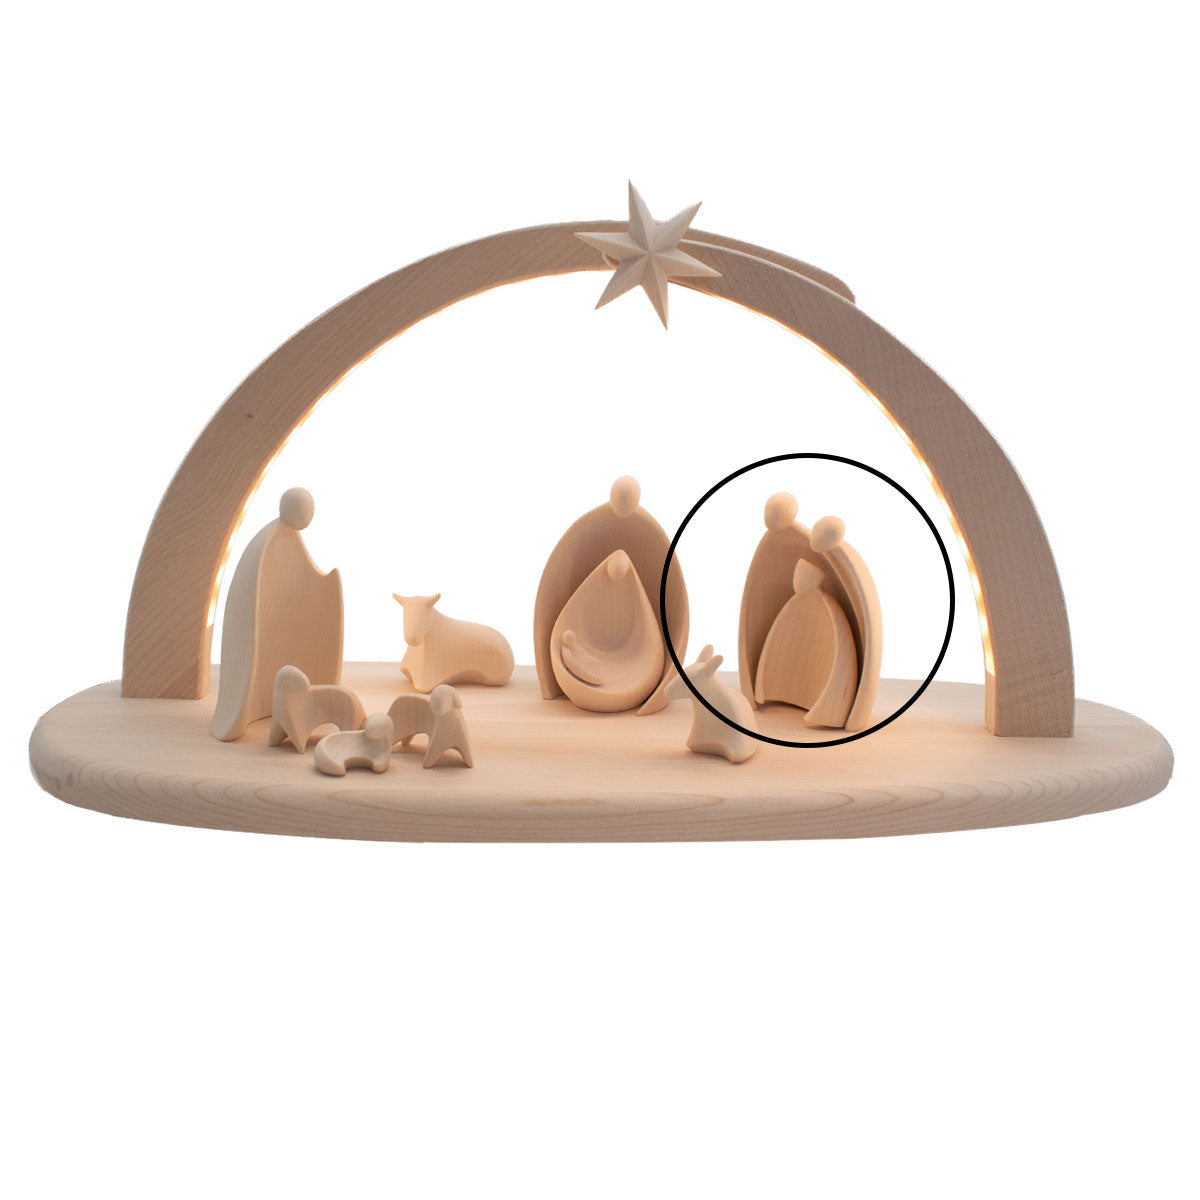 Krippenfigurenset ‘Heilige Drei Könige’ | 2-teilig | Ahorn natur | in verschiedenen Größen | Made in Südtirol